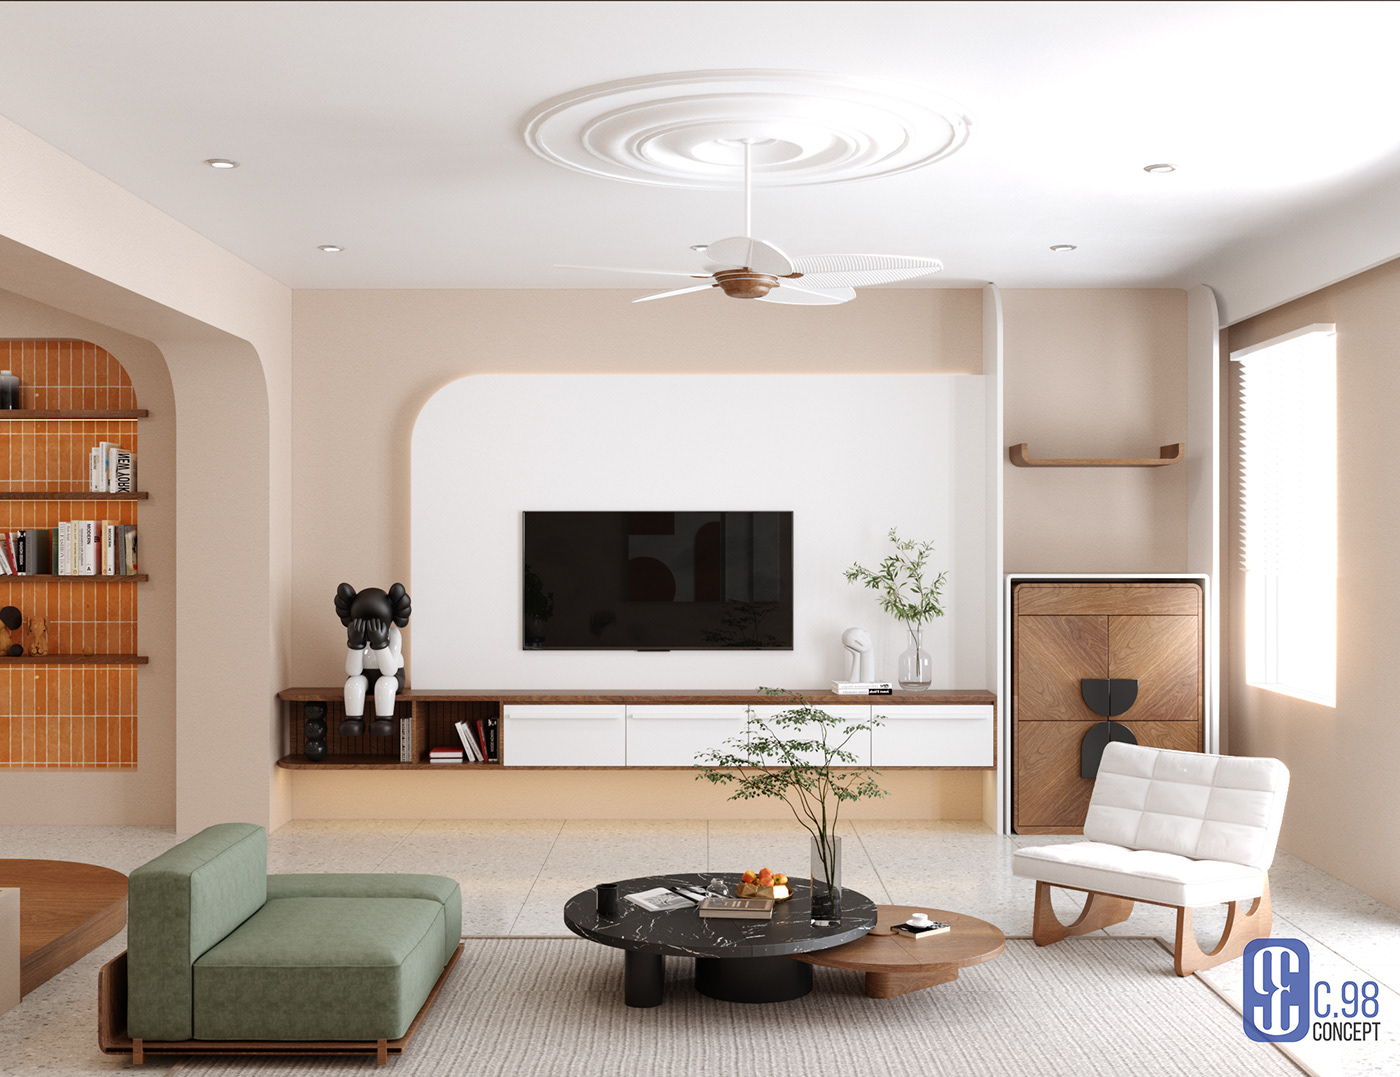 3D 3ds max architecture archviz exterior house interior design  modern Render vray